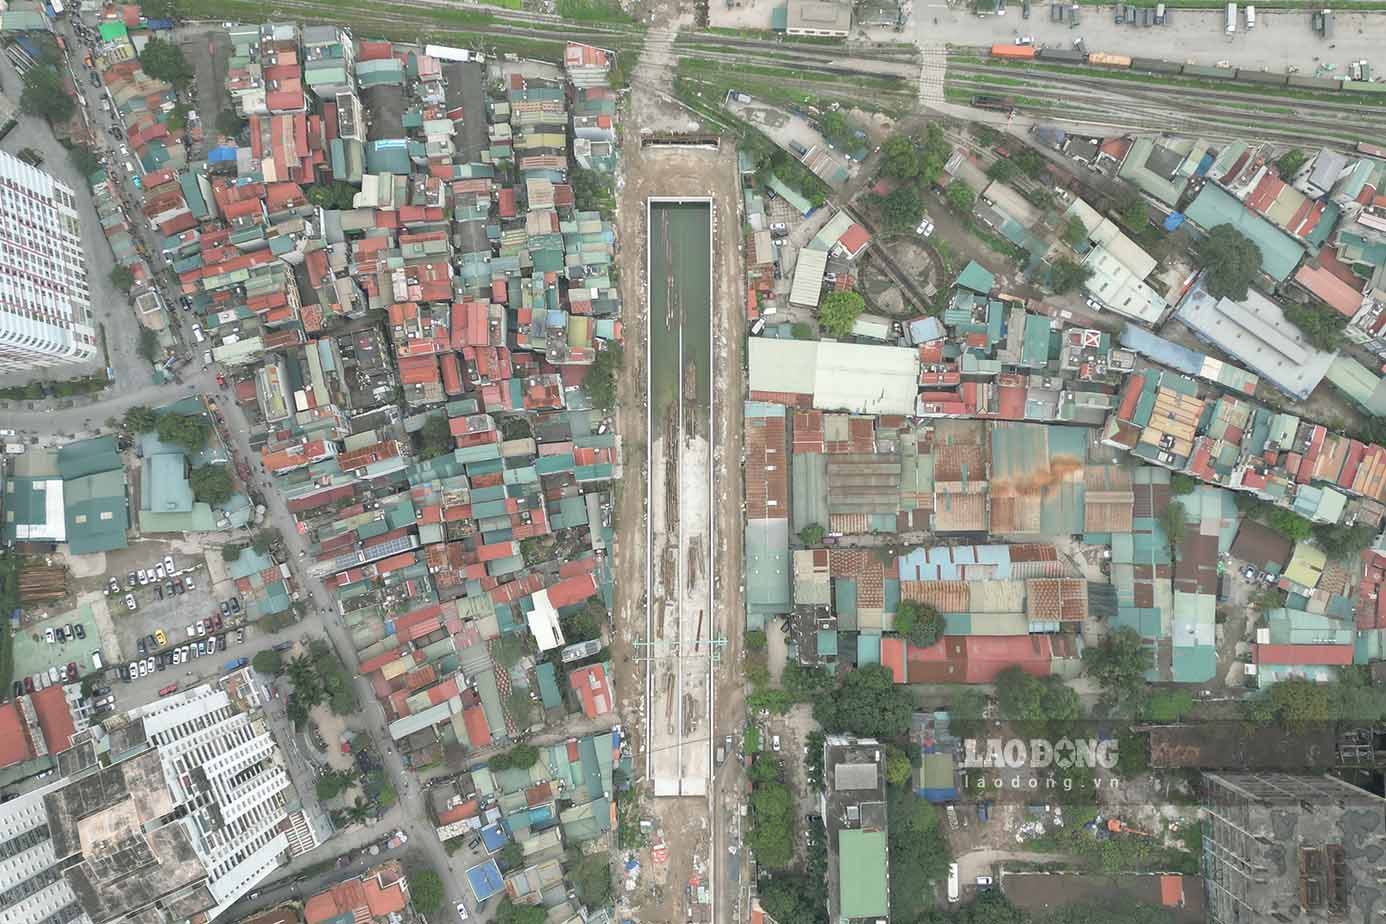 Còn tại công trường xây dựng dọc đường Kim Đồng (thi công dự án hầm chui Kim Đồng – Giải Phóng, quận Hoàng Mai), vật liệu xây dựng, các hố đào ngổn ngang ngay trước cửa và lối ra vào của các hộ gia đình